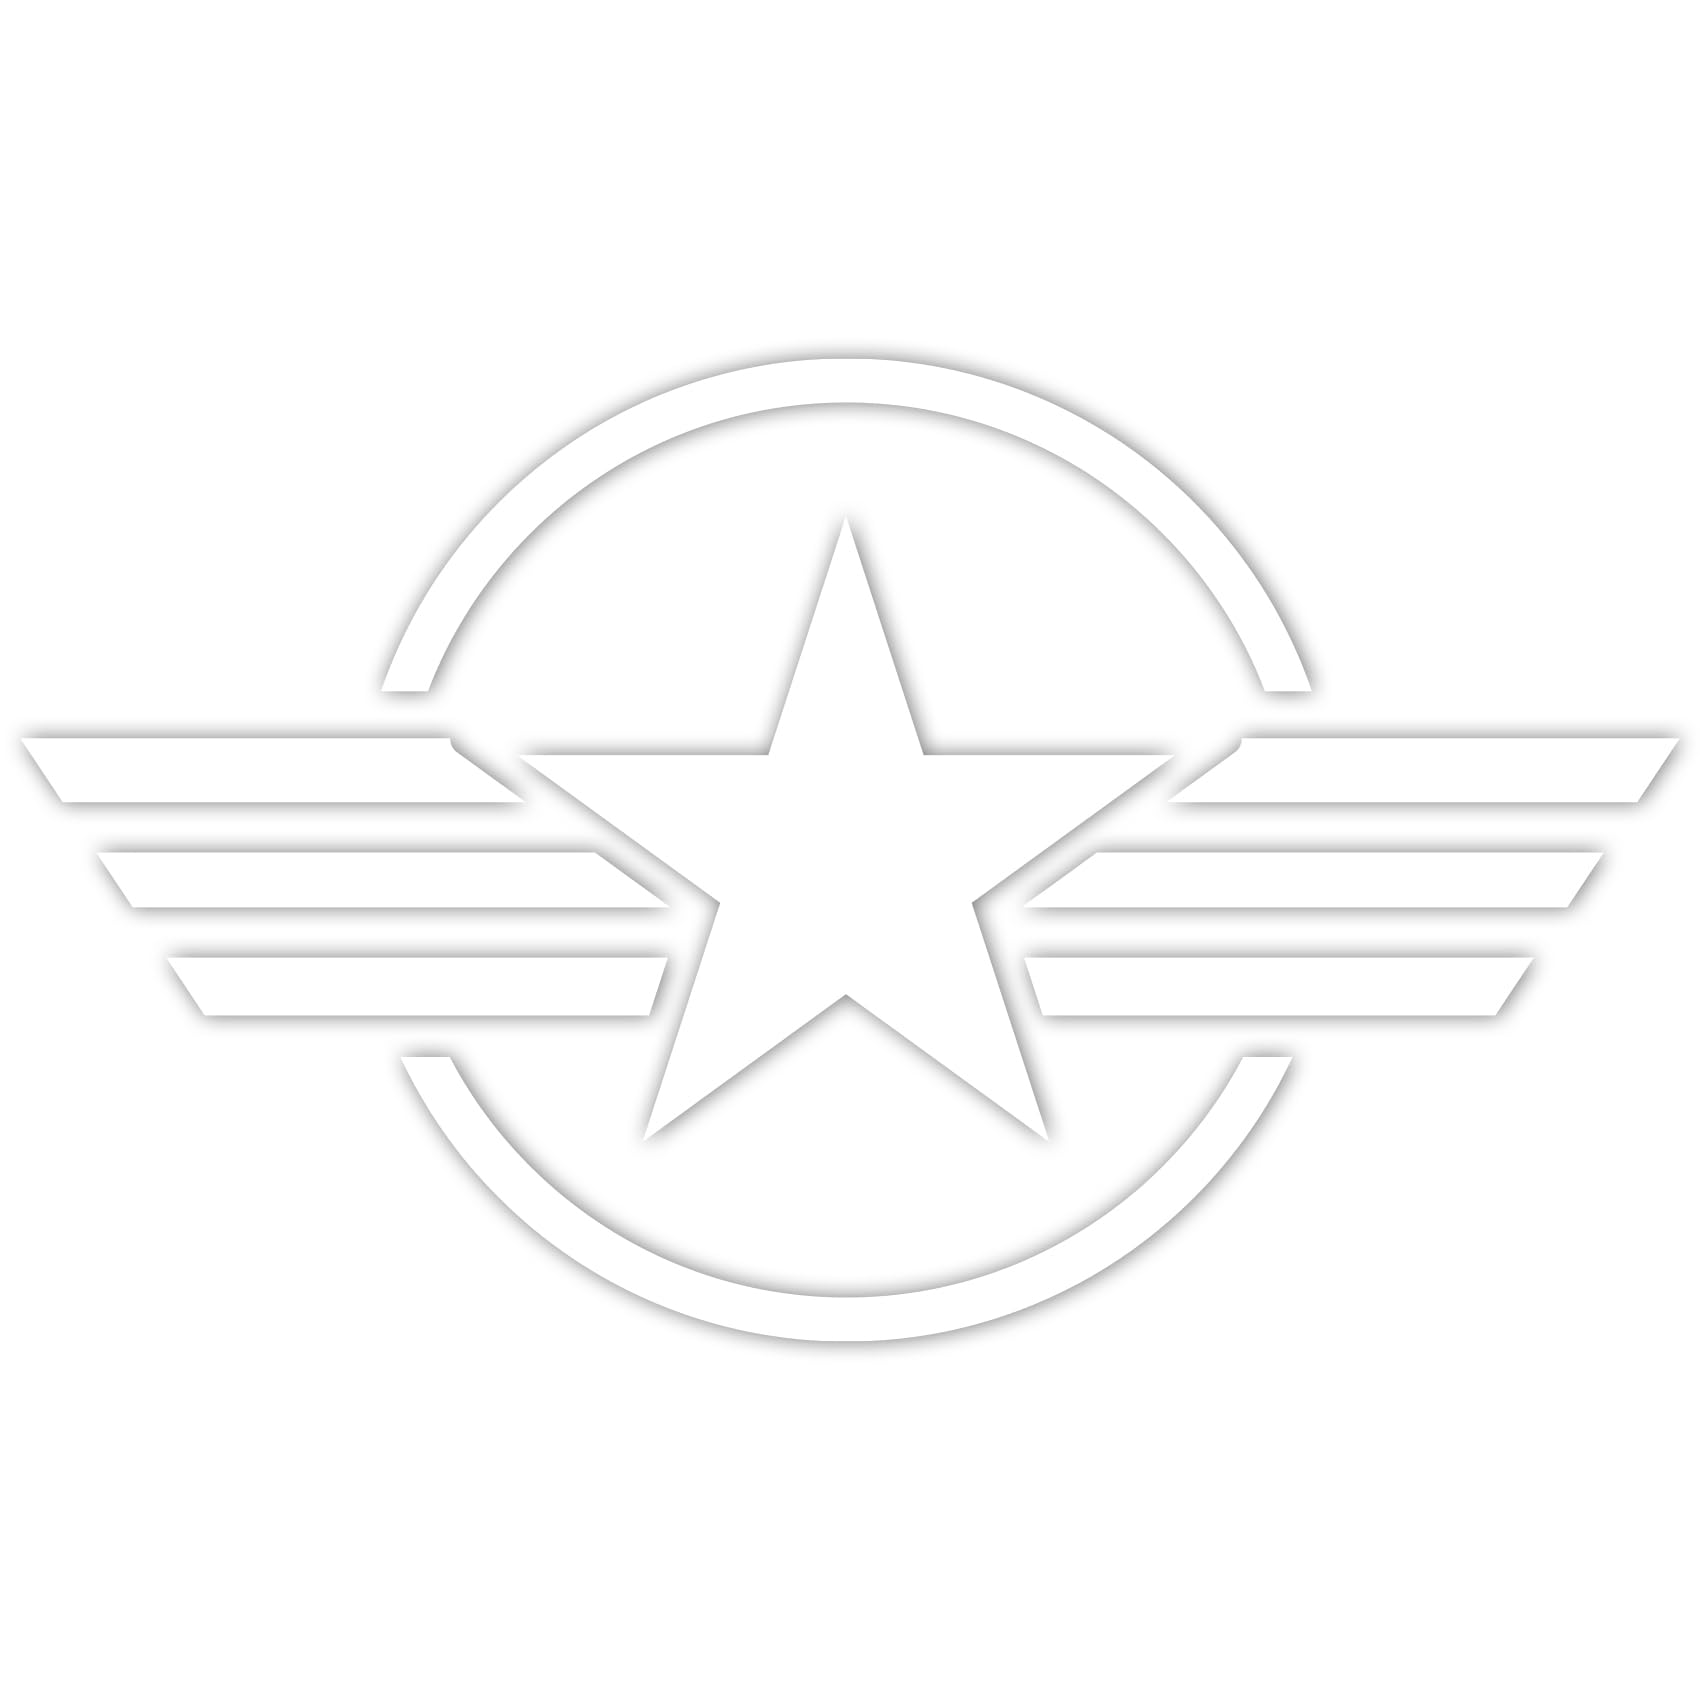 Finest Folia 2er Set Autoaufkleber Army Stern Sticker Folie für Auto Motorrad Anhänger Aufkleber US Star Motiv 4 selbstklebend wetterfest Kfz Zubehör (Weiß Glanz, 10 x 10 cm K171) von Finest Folia